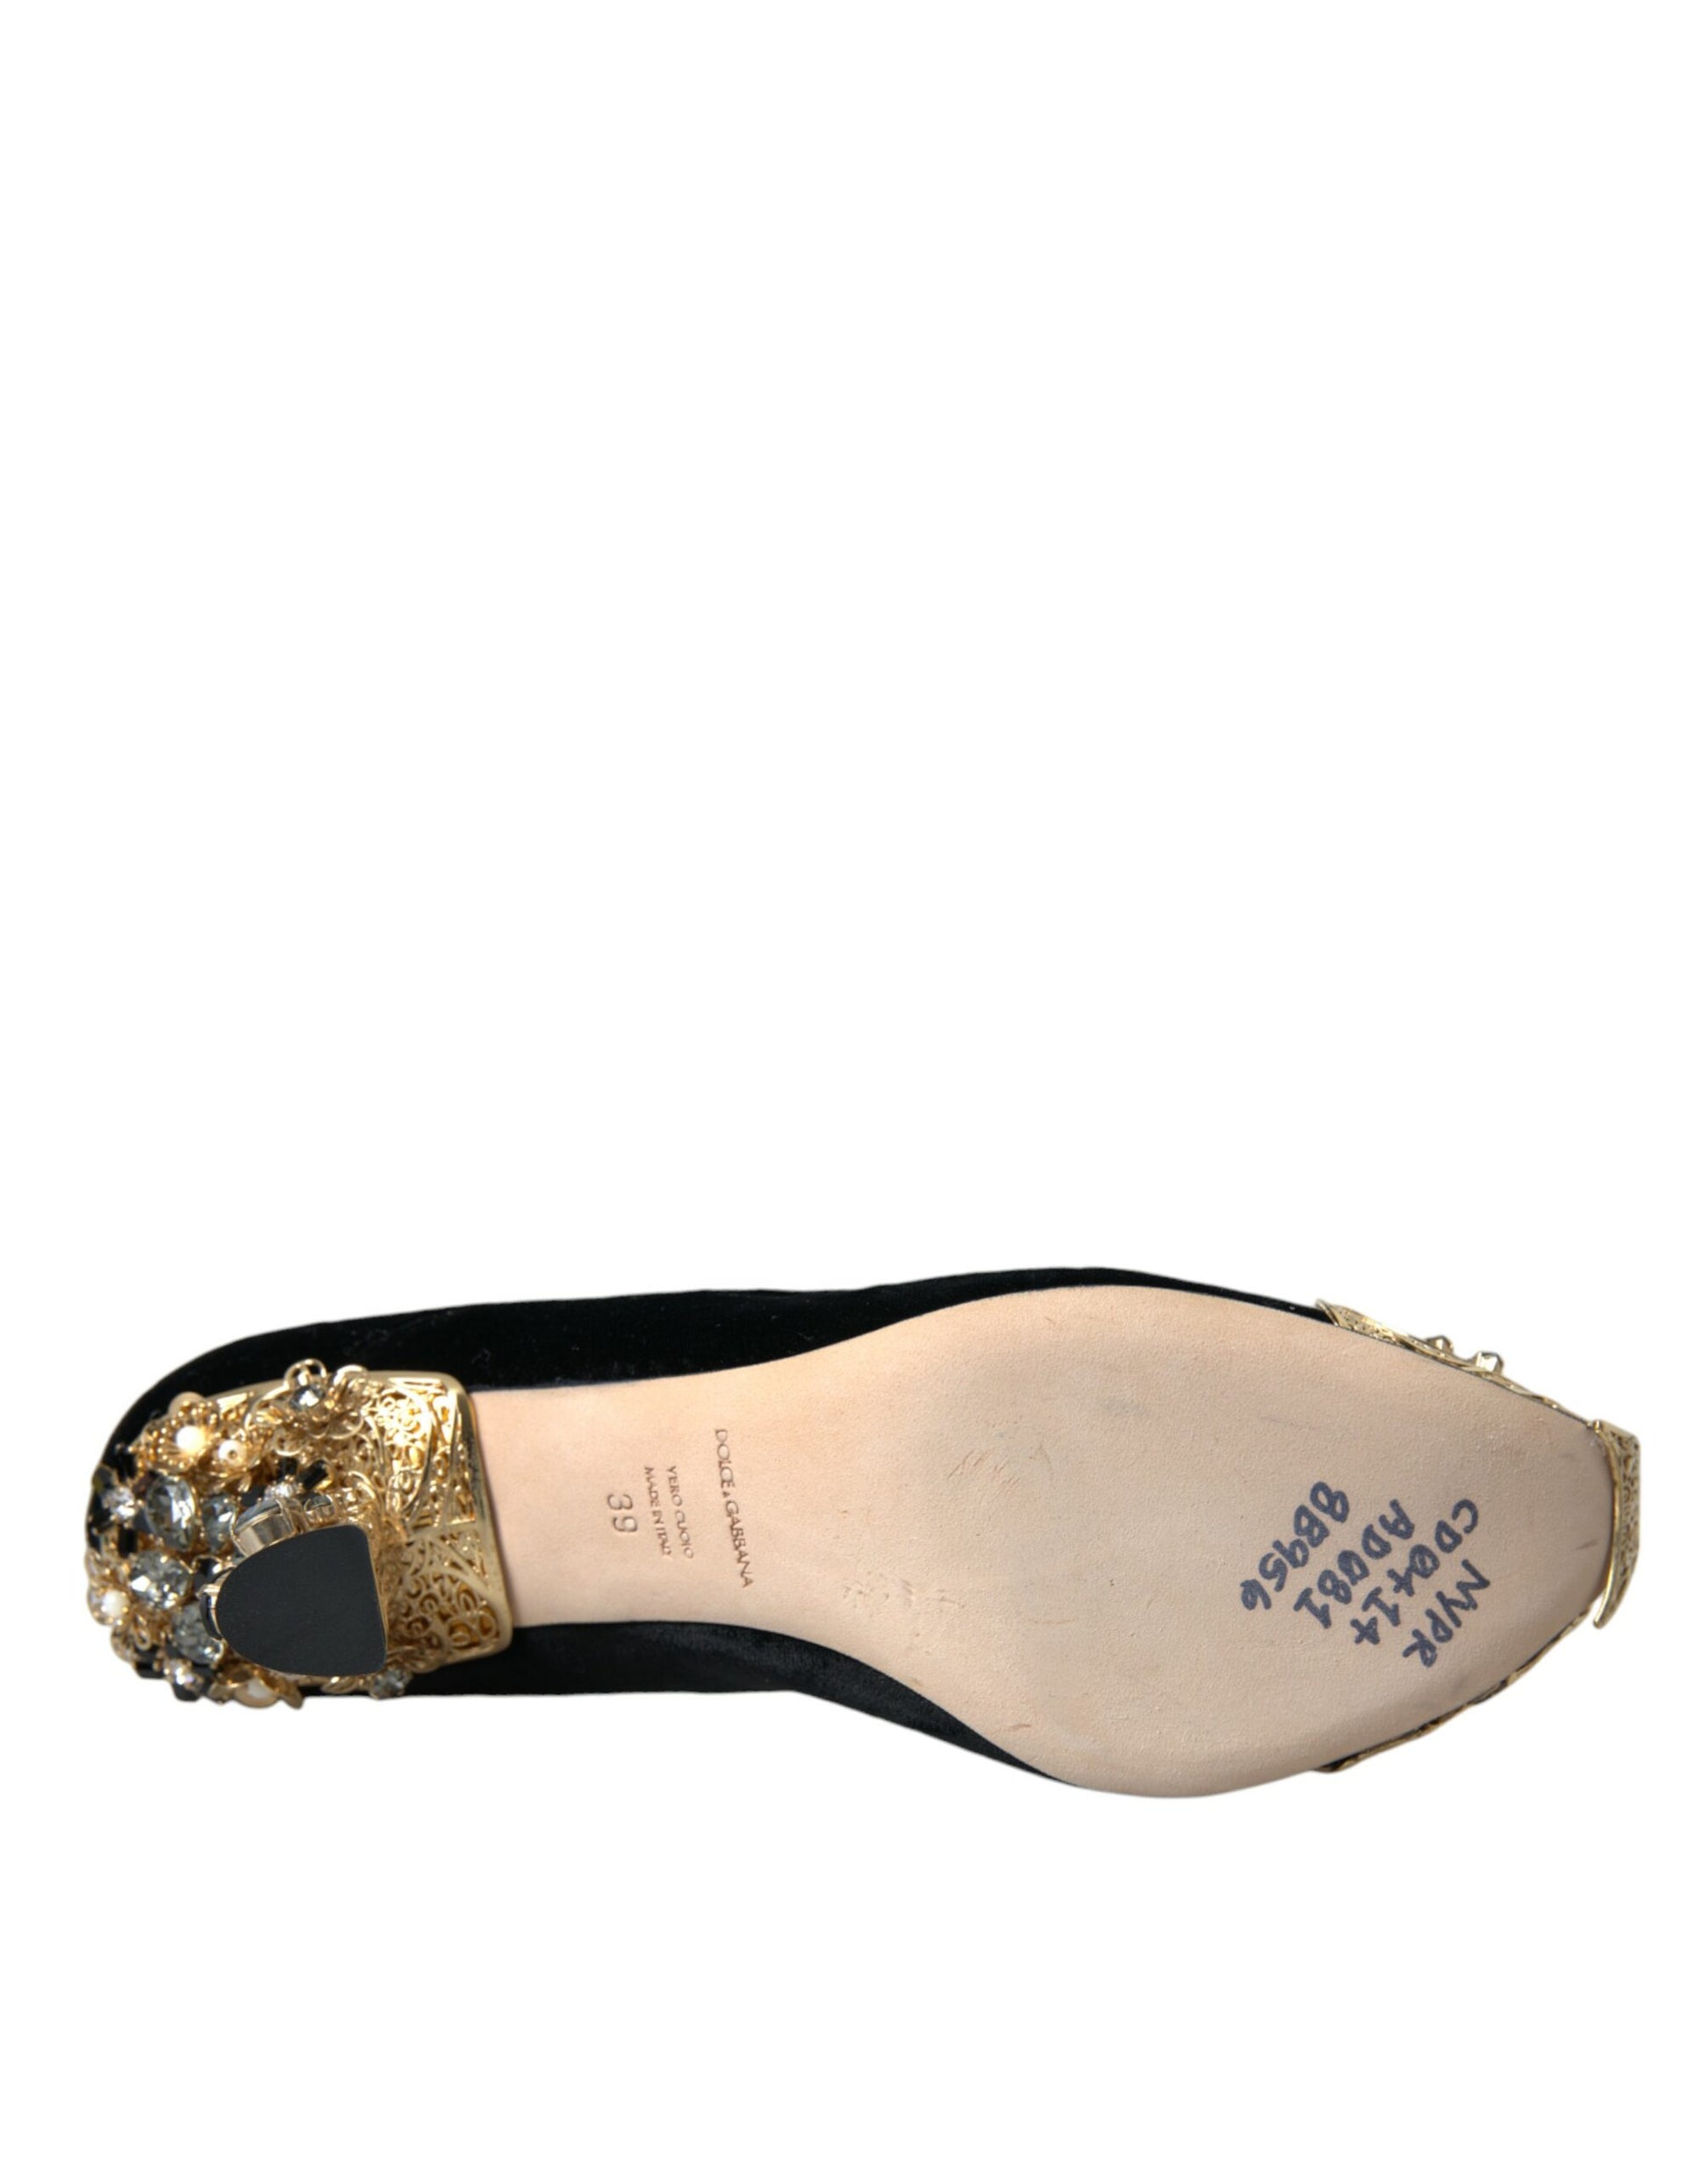 Dolce & Gabbana Black Velvet Embellished Heels Pumps Shoes